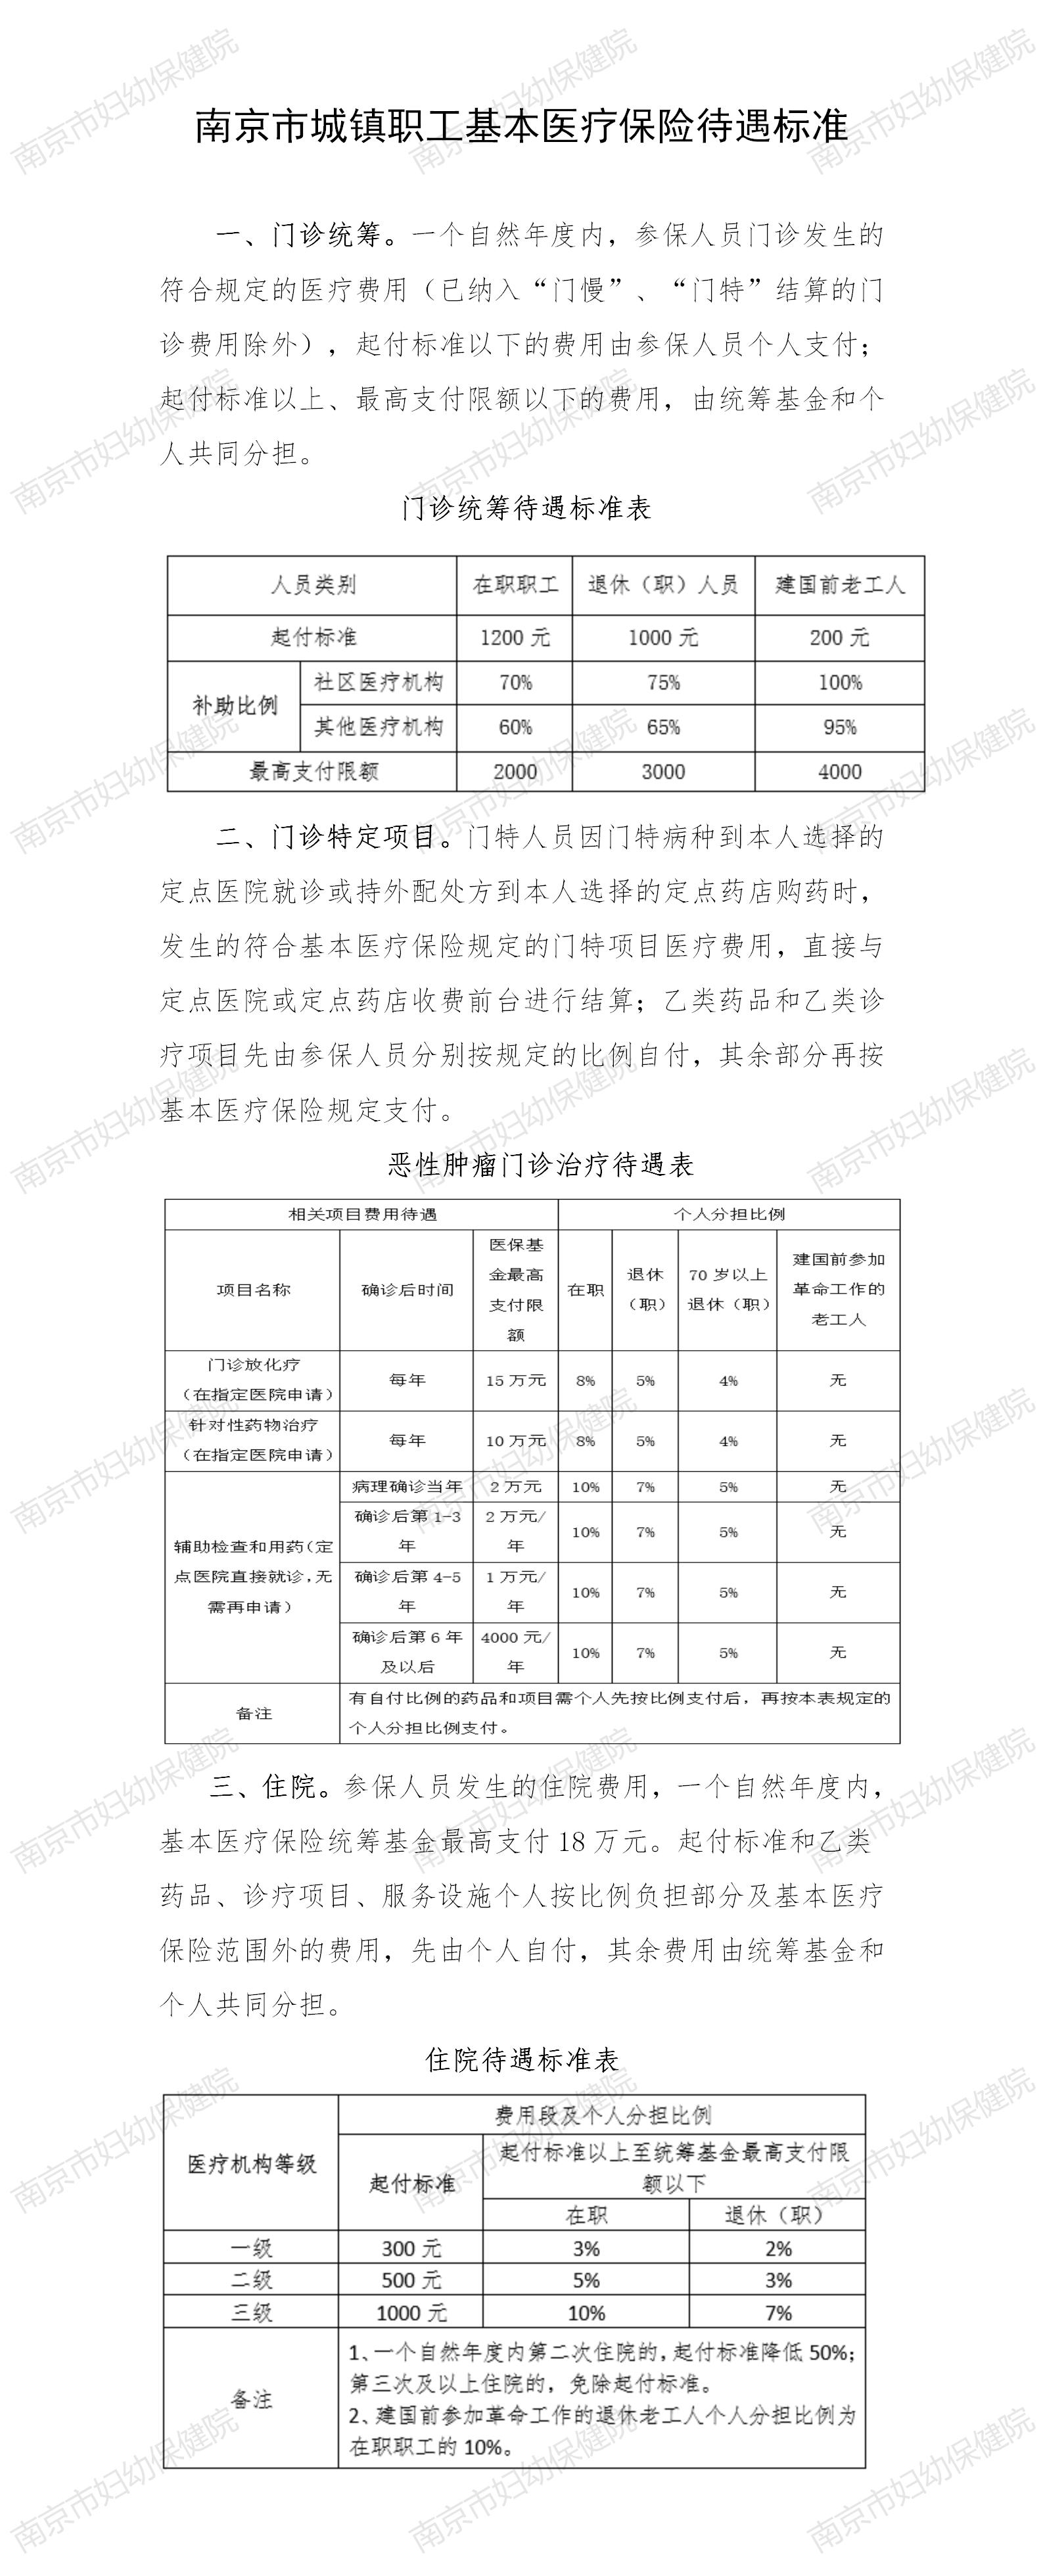 南京市城镇职工基本医疗保险待遇标准_01.jpg